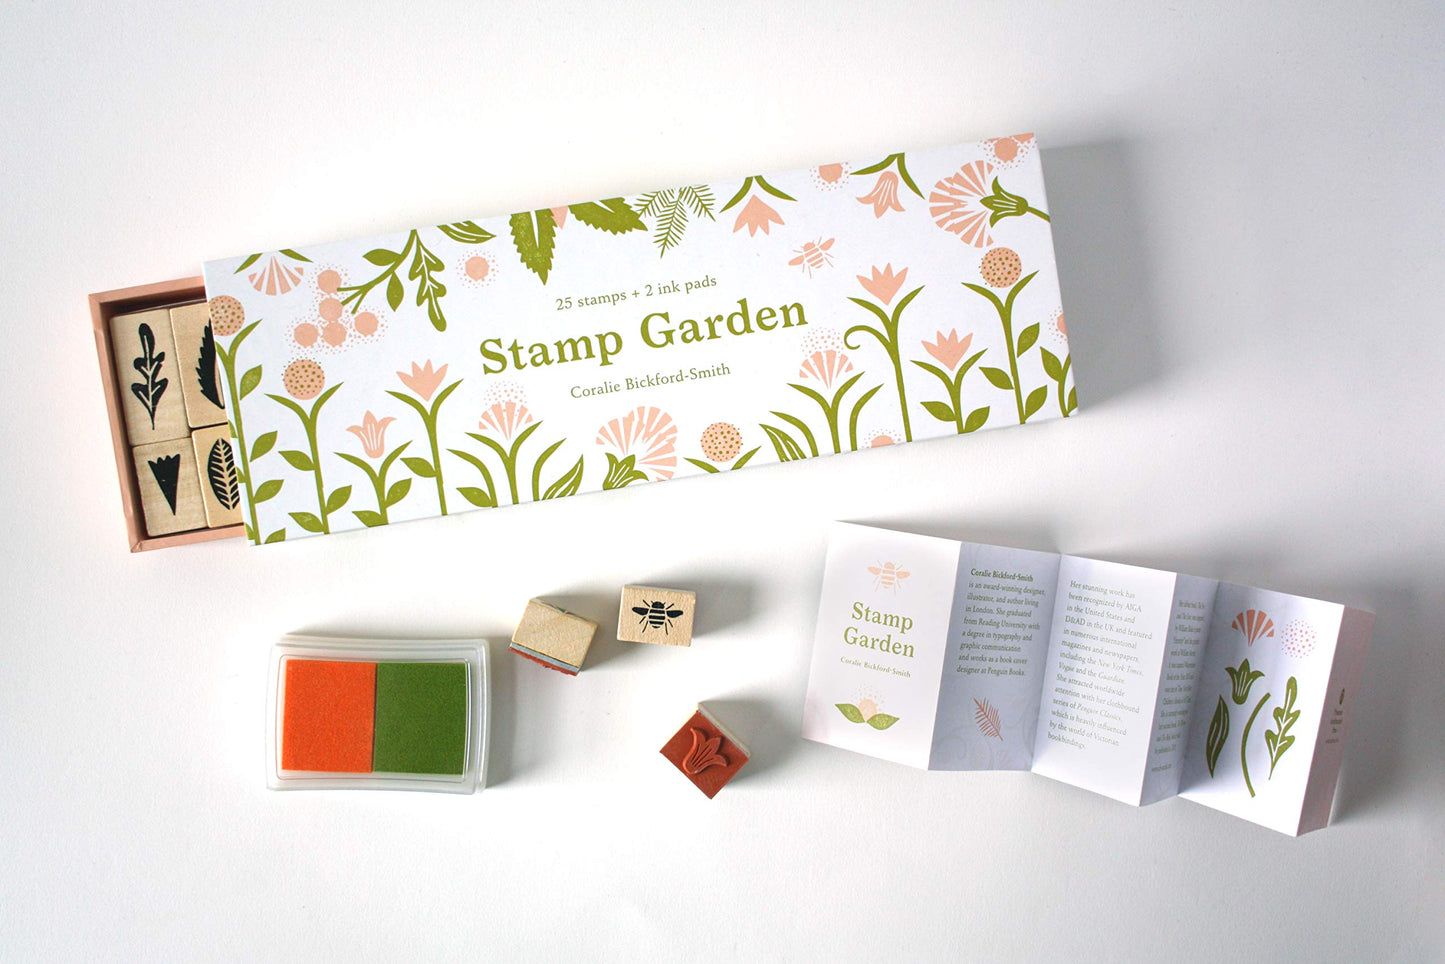 Stamp Garden | Coralie Bickford-Smith